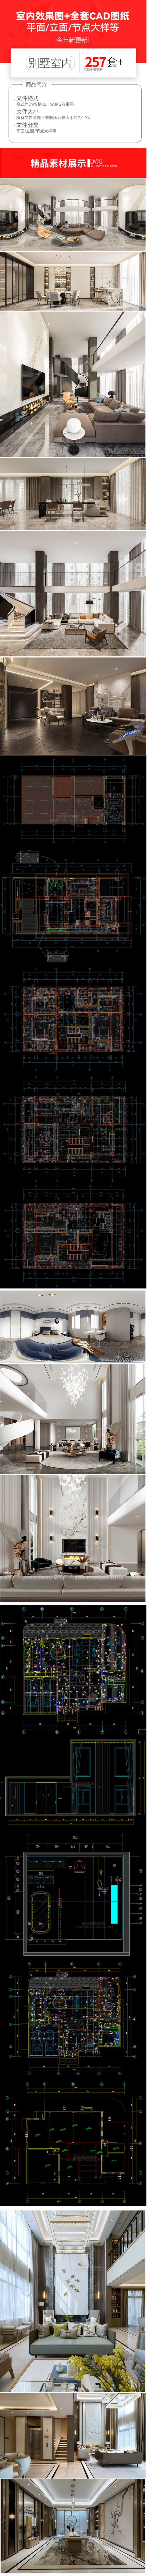 257套欧式别墅全套室内家装装修设计方案效果图平面立面CAD施工图图纸 图片素材 第2张